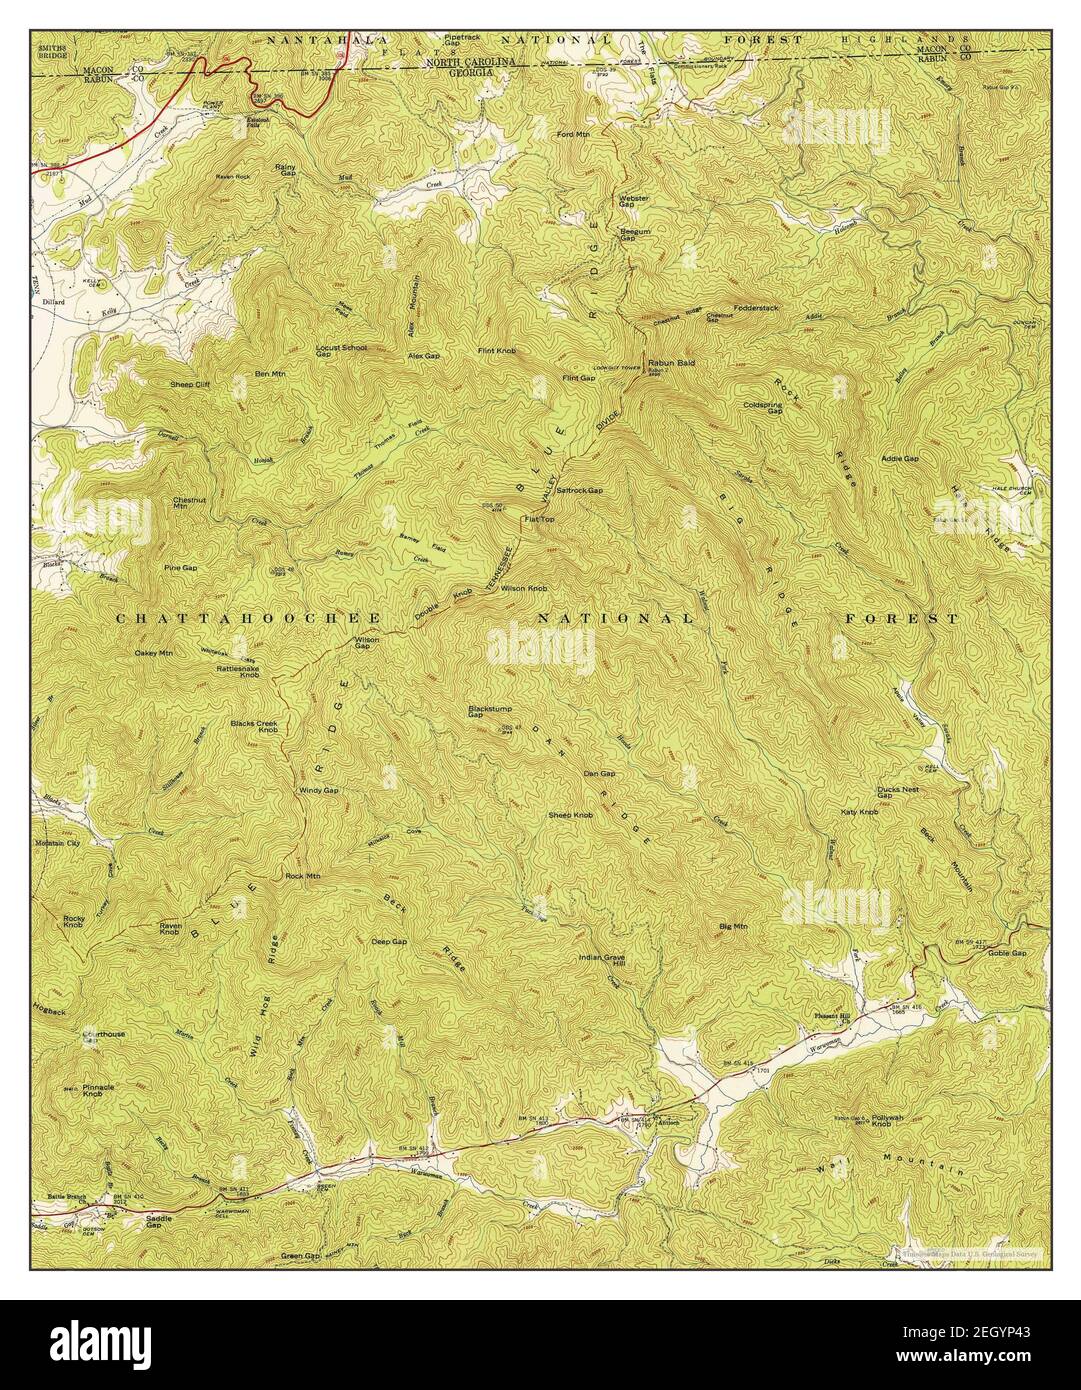 Rabun bald, Georgia, map 1946, 1:24000, Vereinigte Staaten von Amerika von Timeless Maps, Data U.S. Geological Survey Stockfoto